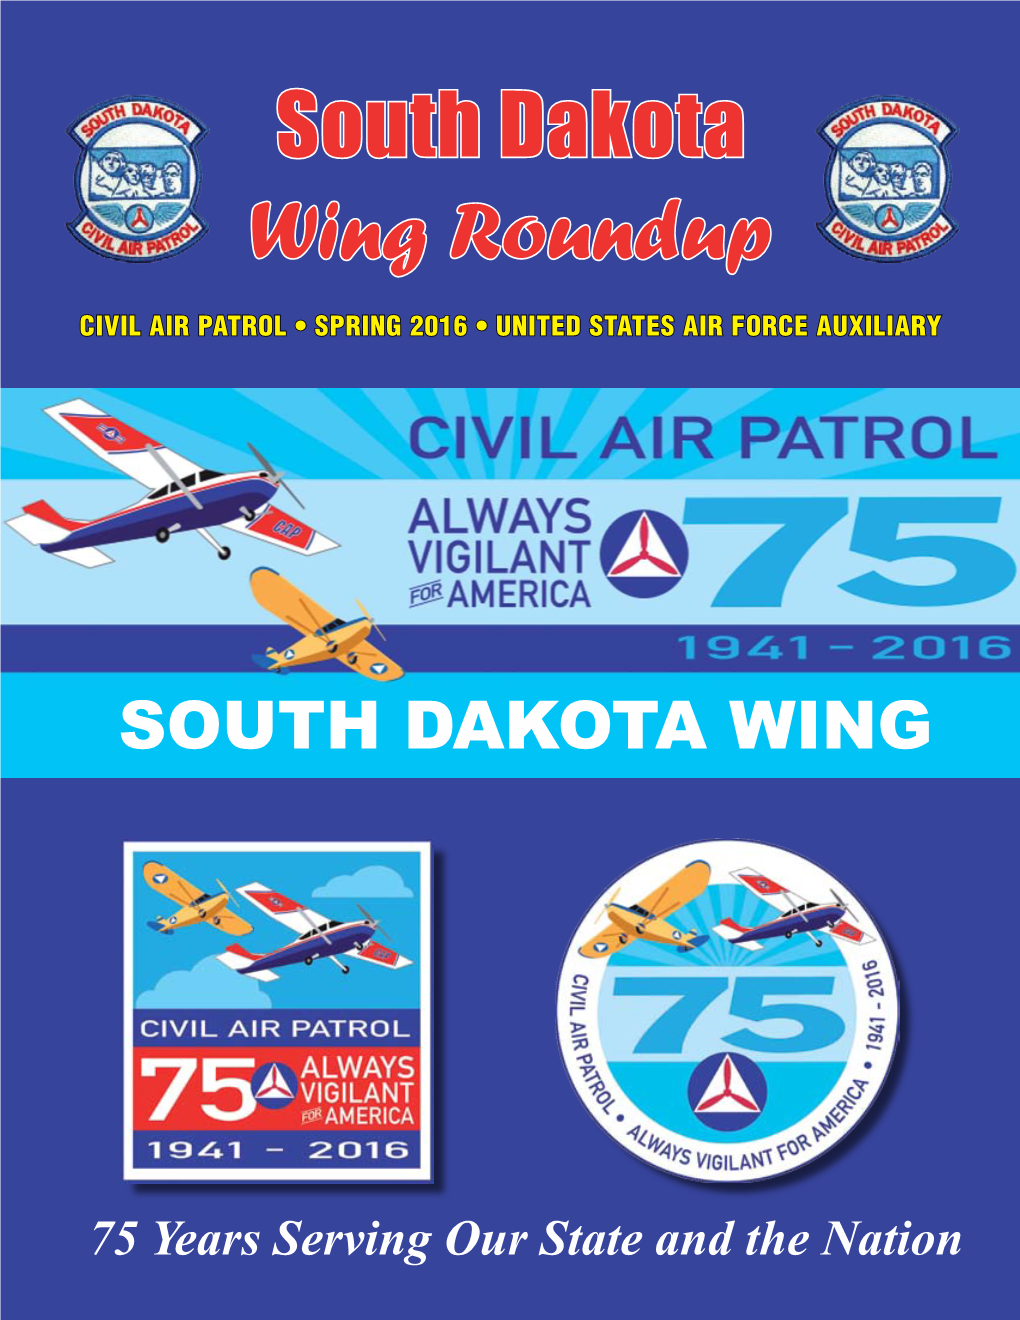 South Dakota Wing Roundup